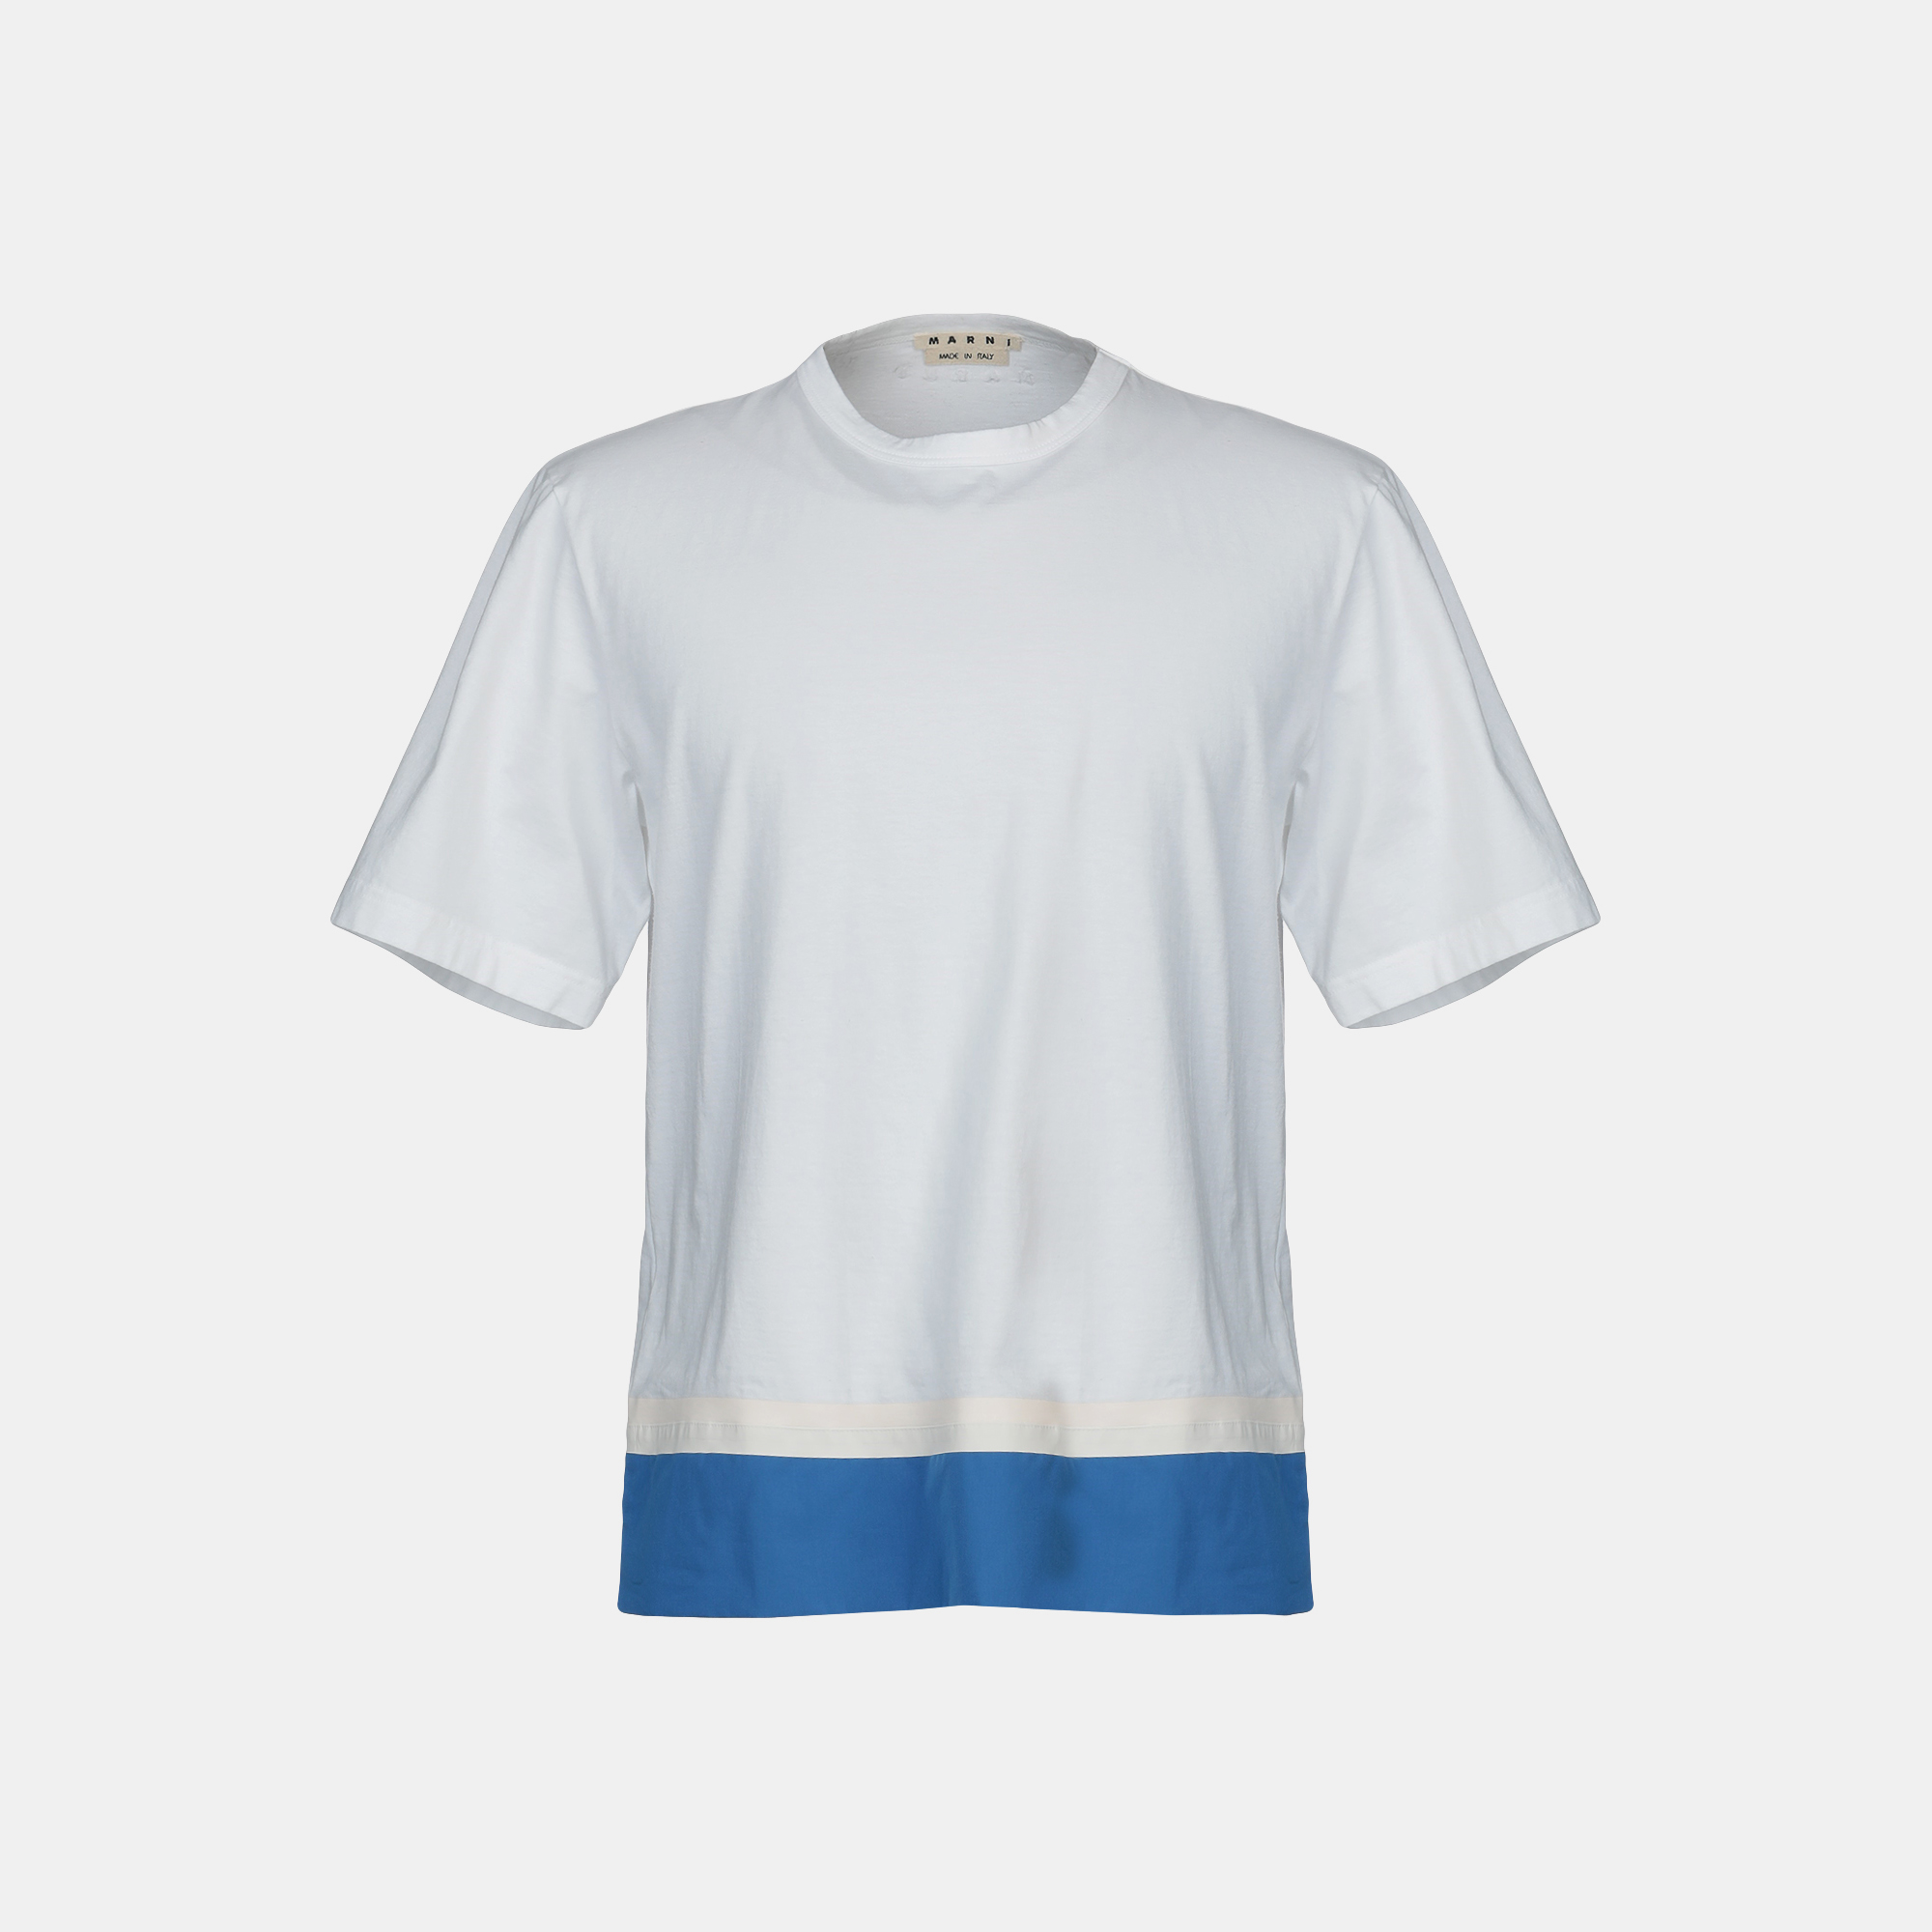 Marni cotton t-shirts 50